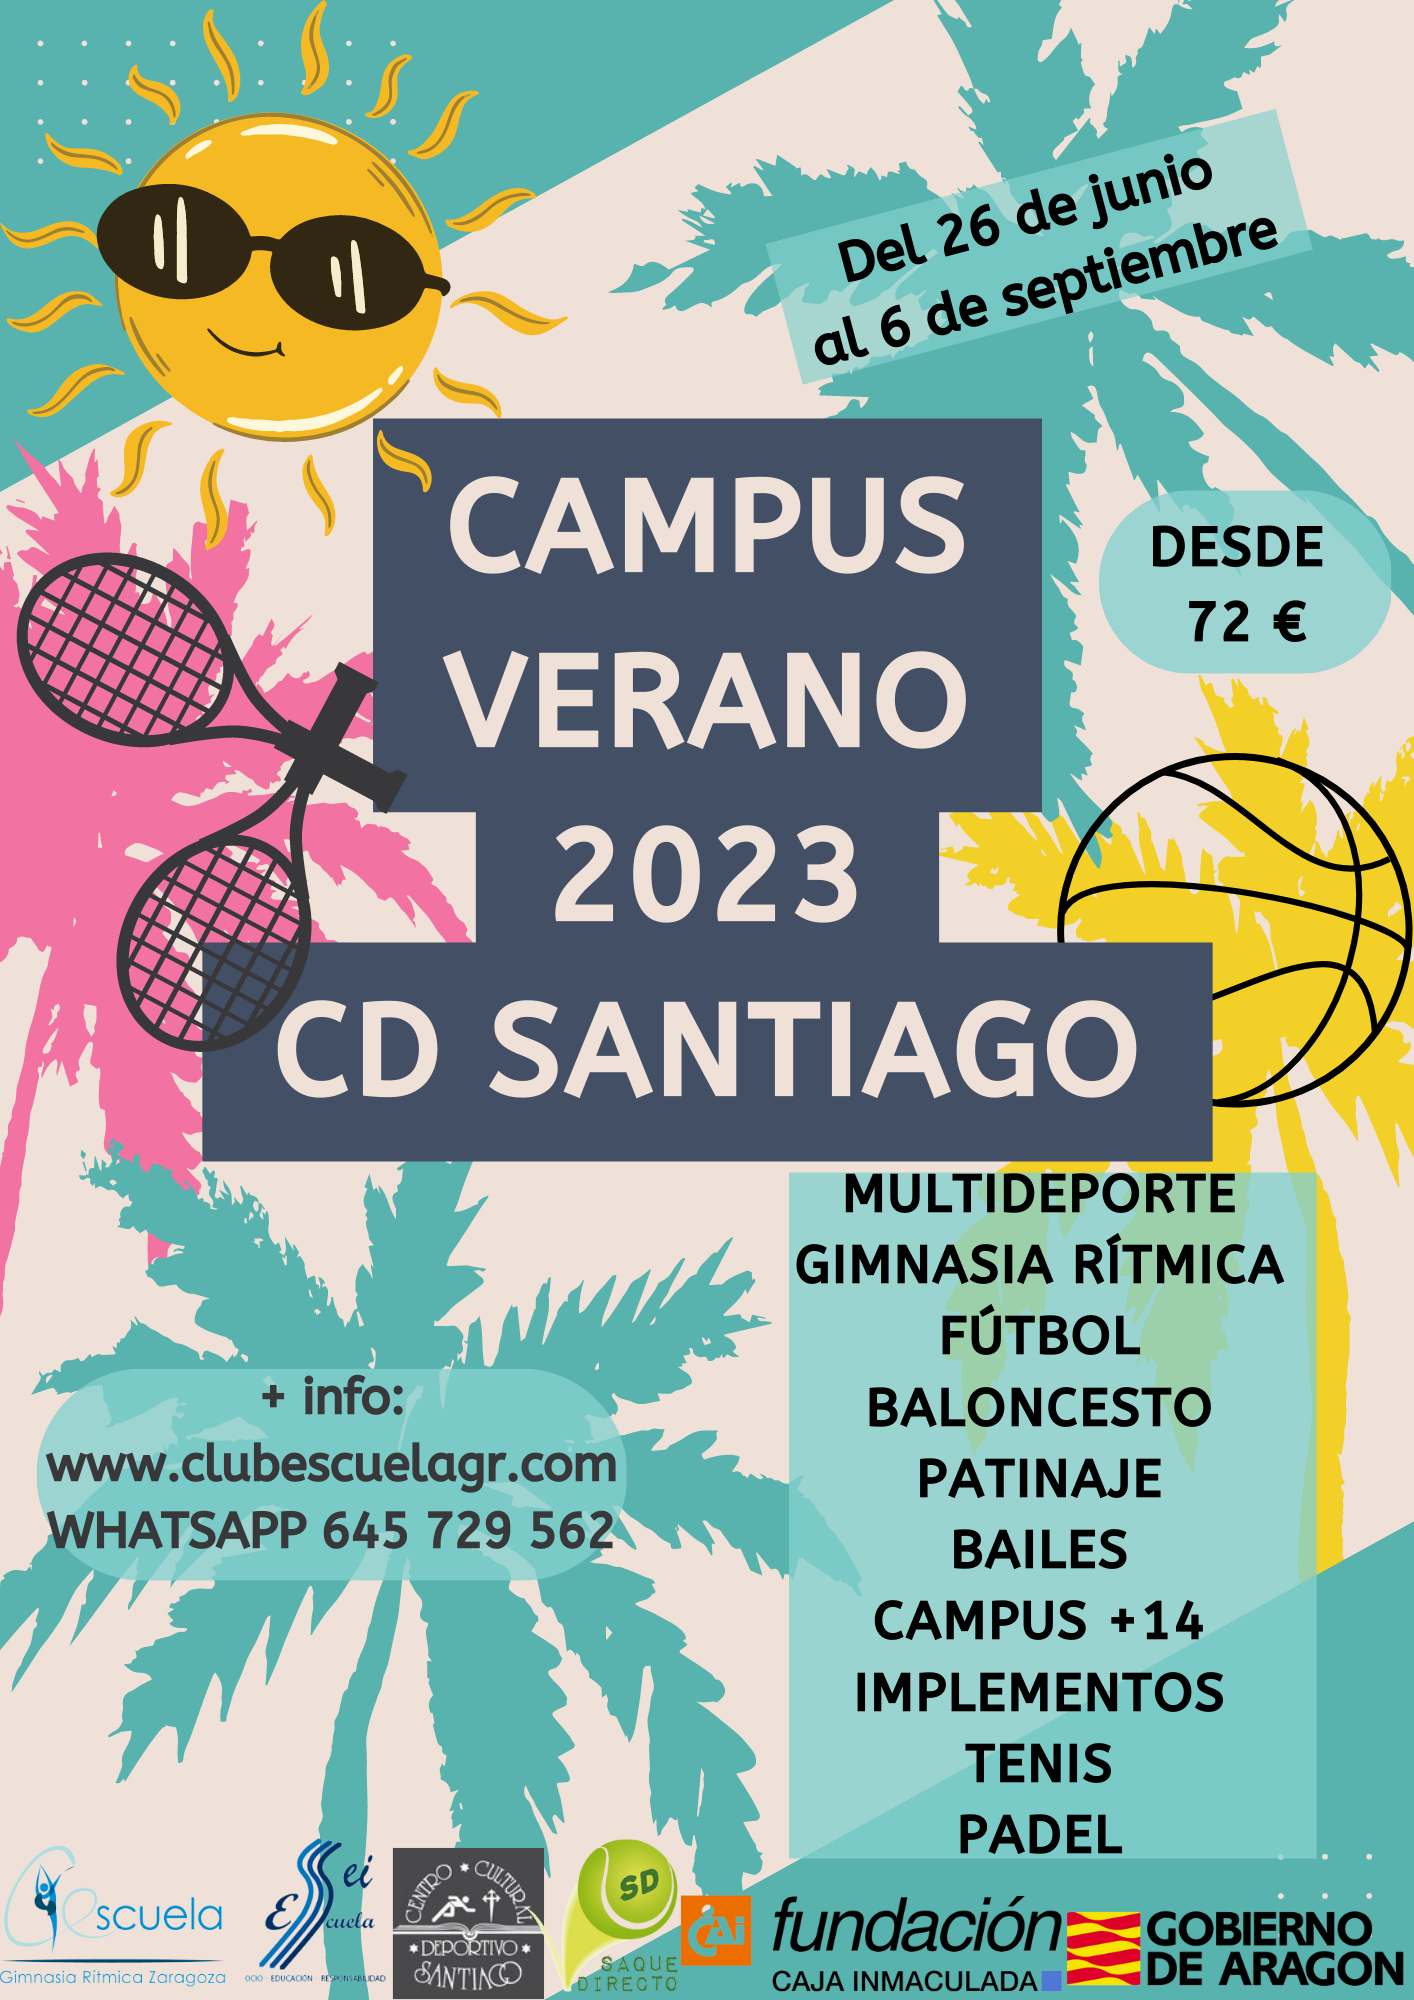 C.D. SANTIAGO - CAMPUS DE VERANO 2023 - Inscríbete